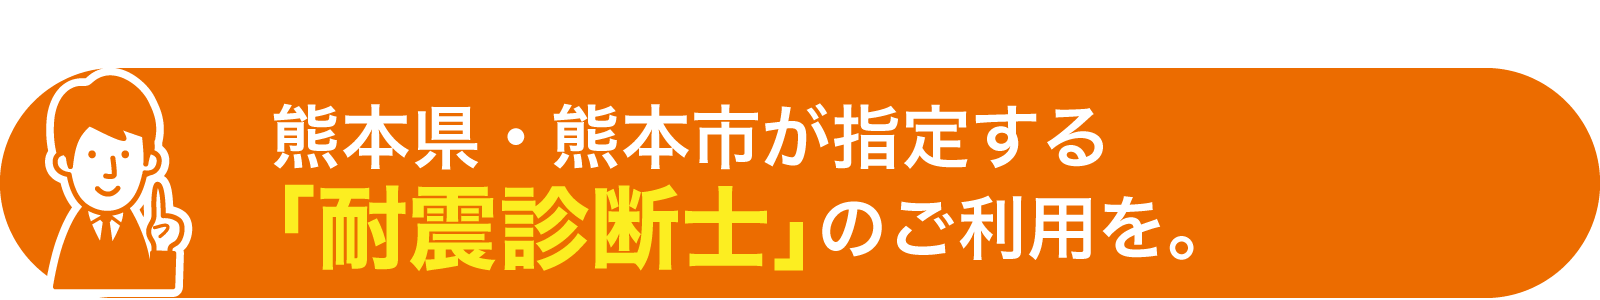 熊本県・熊本市が指定する「耐震診断士」のご利用を。